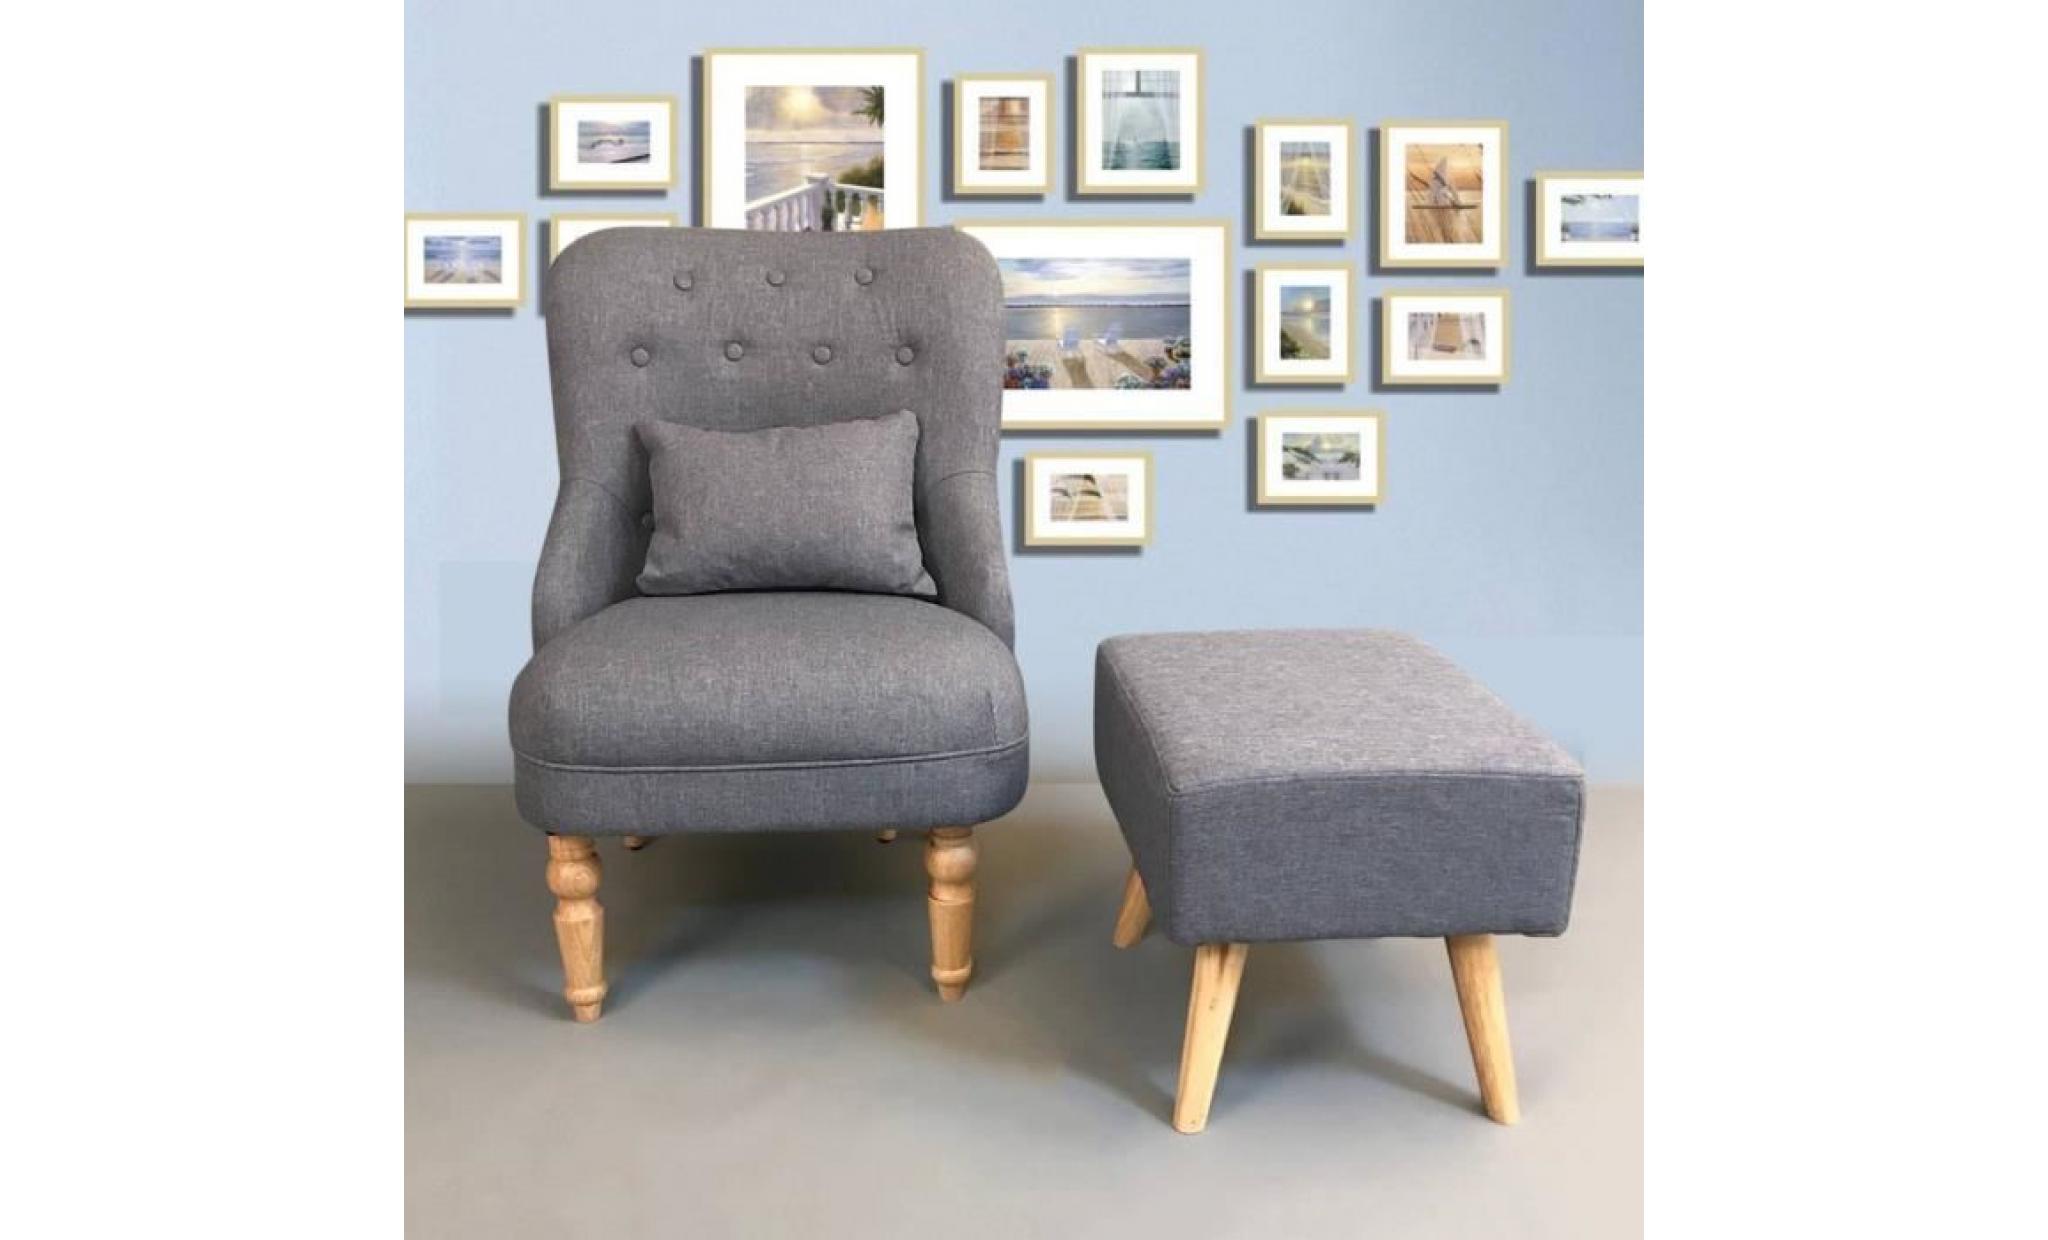 divan classique single place sofa avec tabouret canapé de style royale fauteuil en tissu gris anthracite